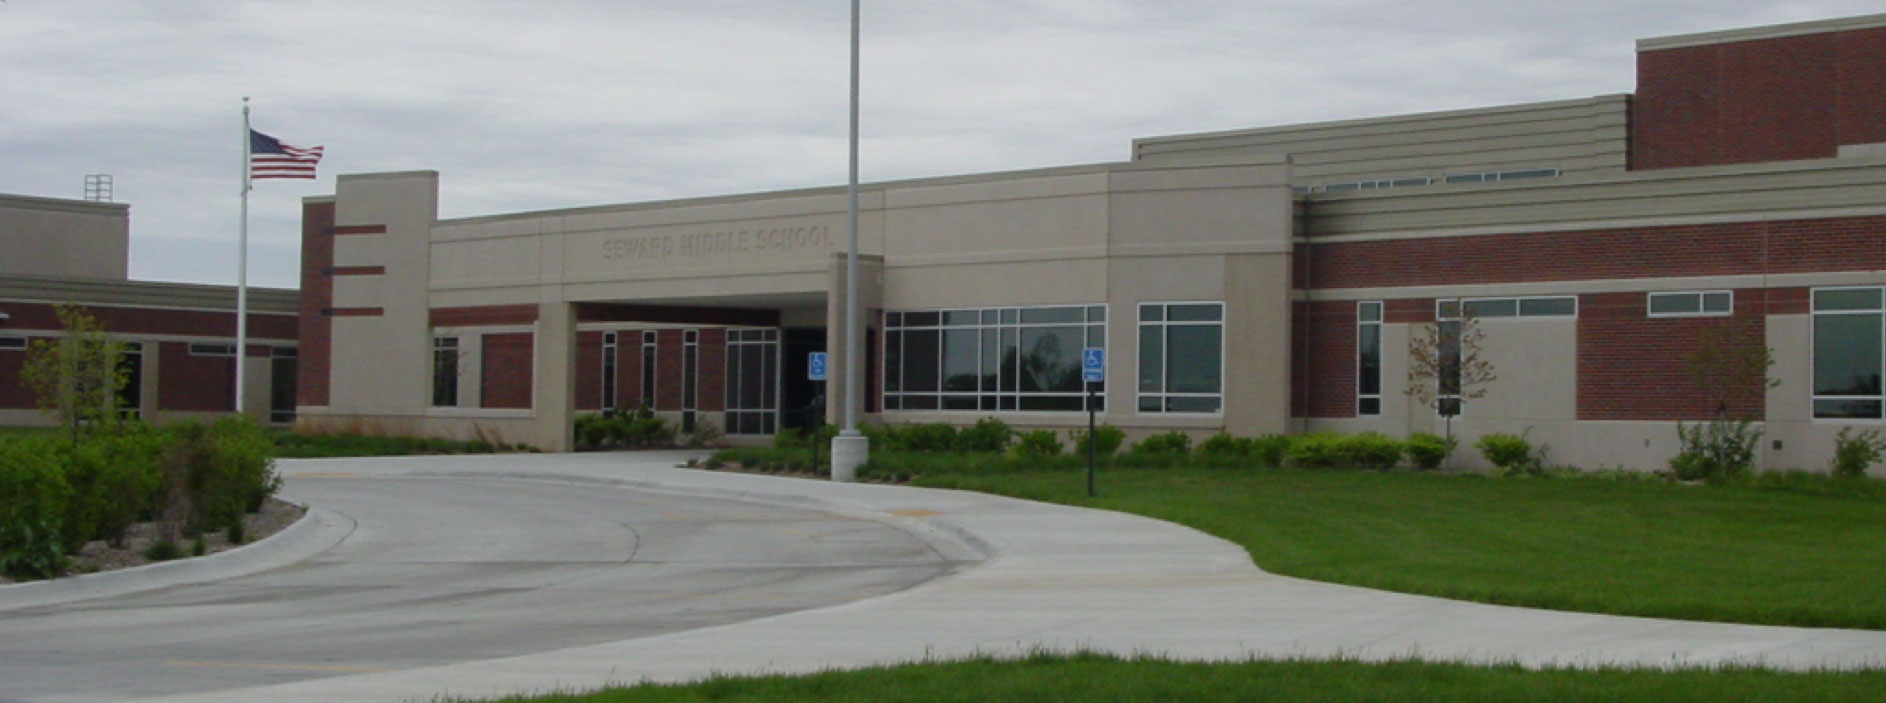 image of school building